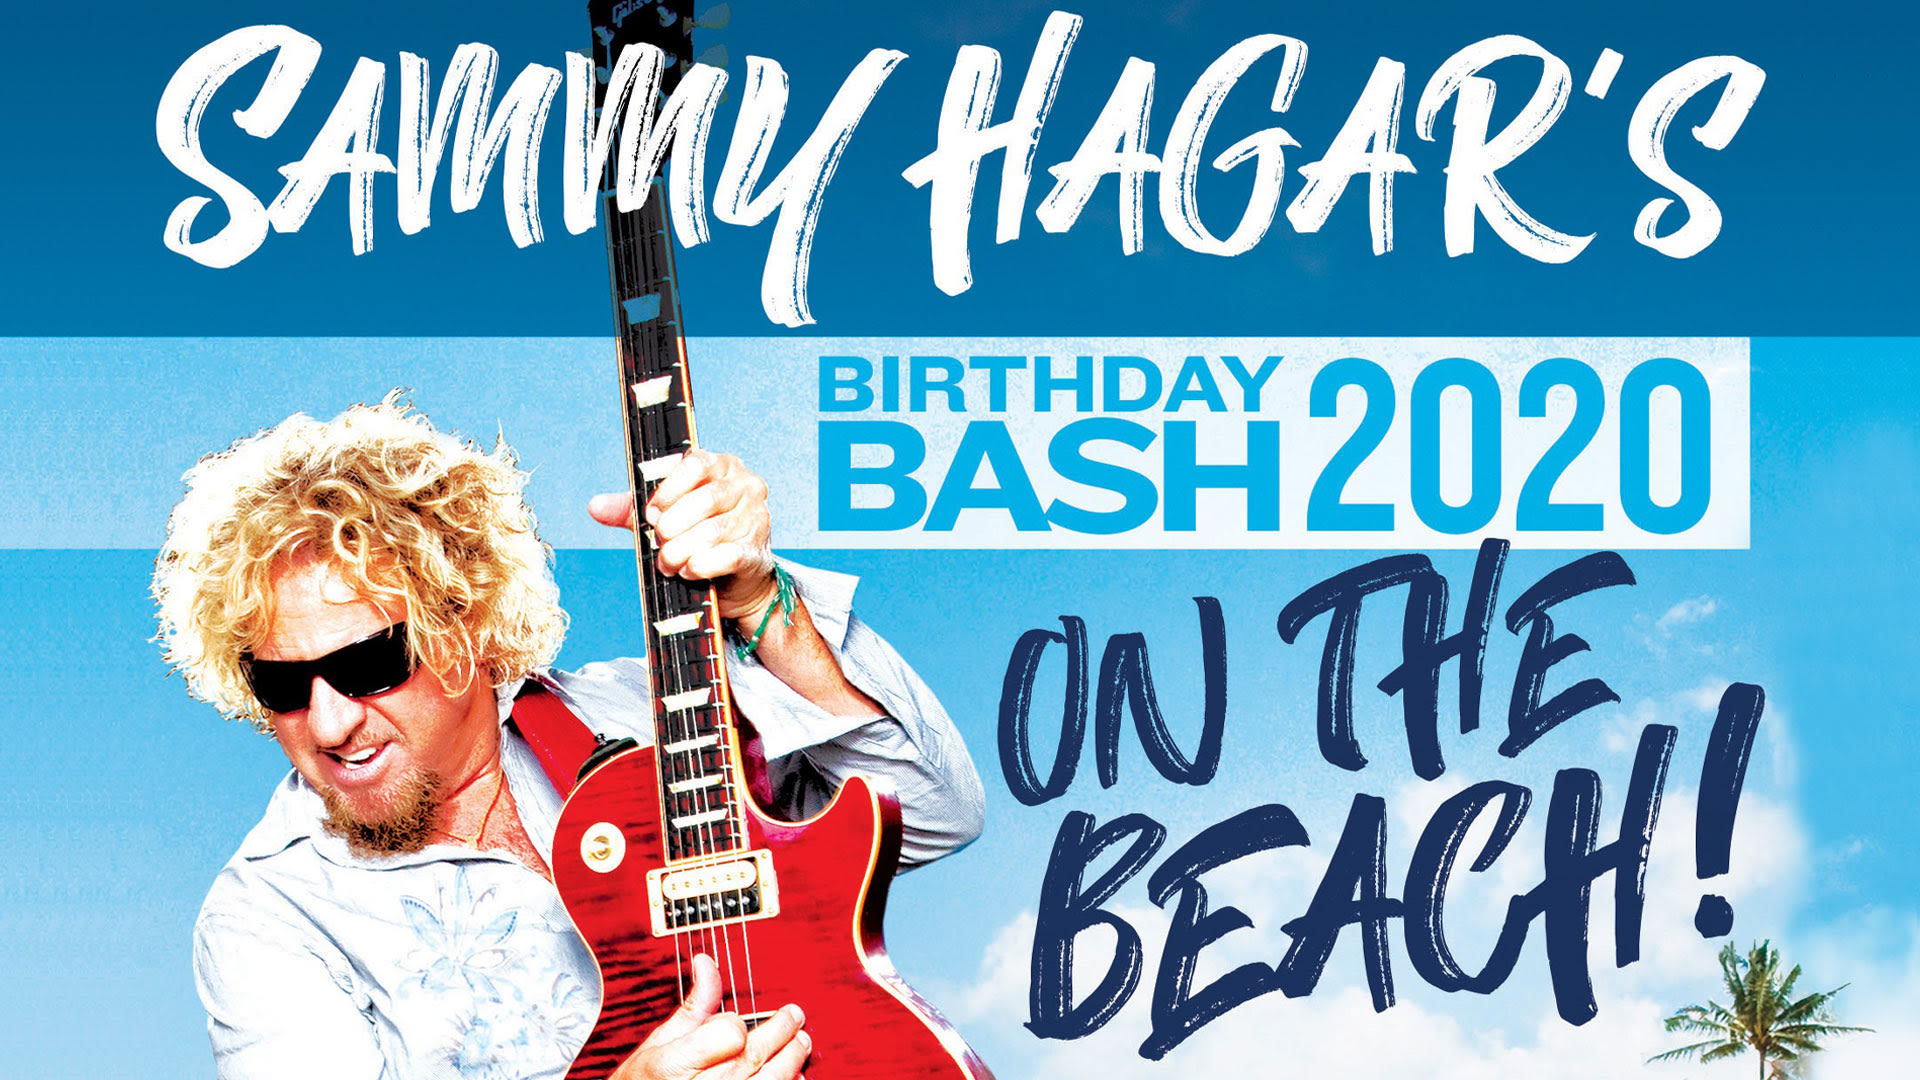 Birthday Bash 2020 on the Beach!